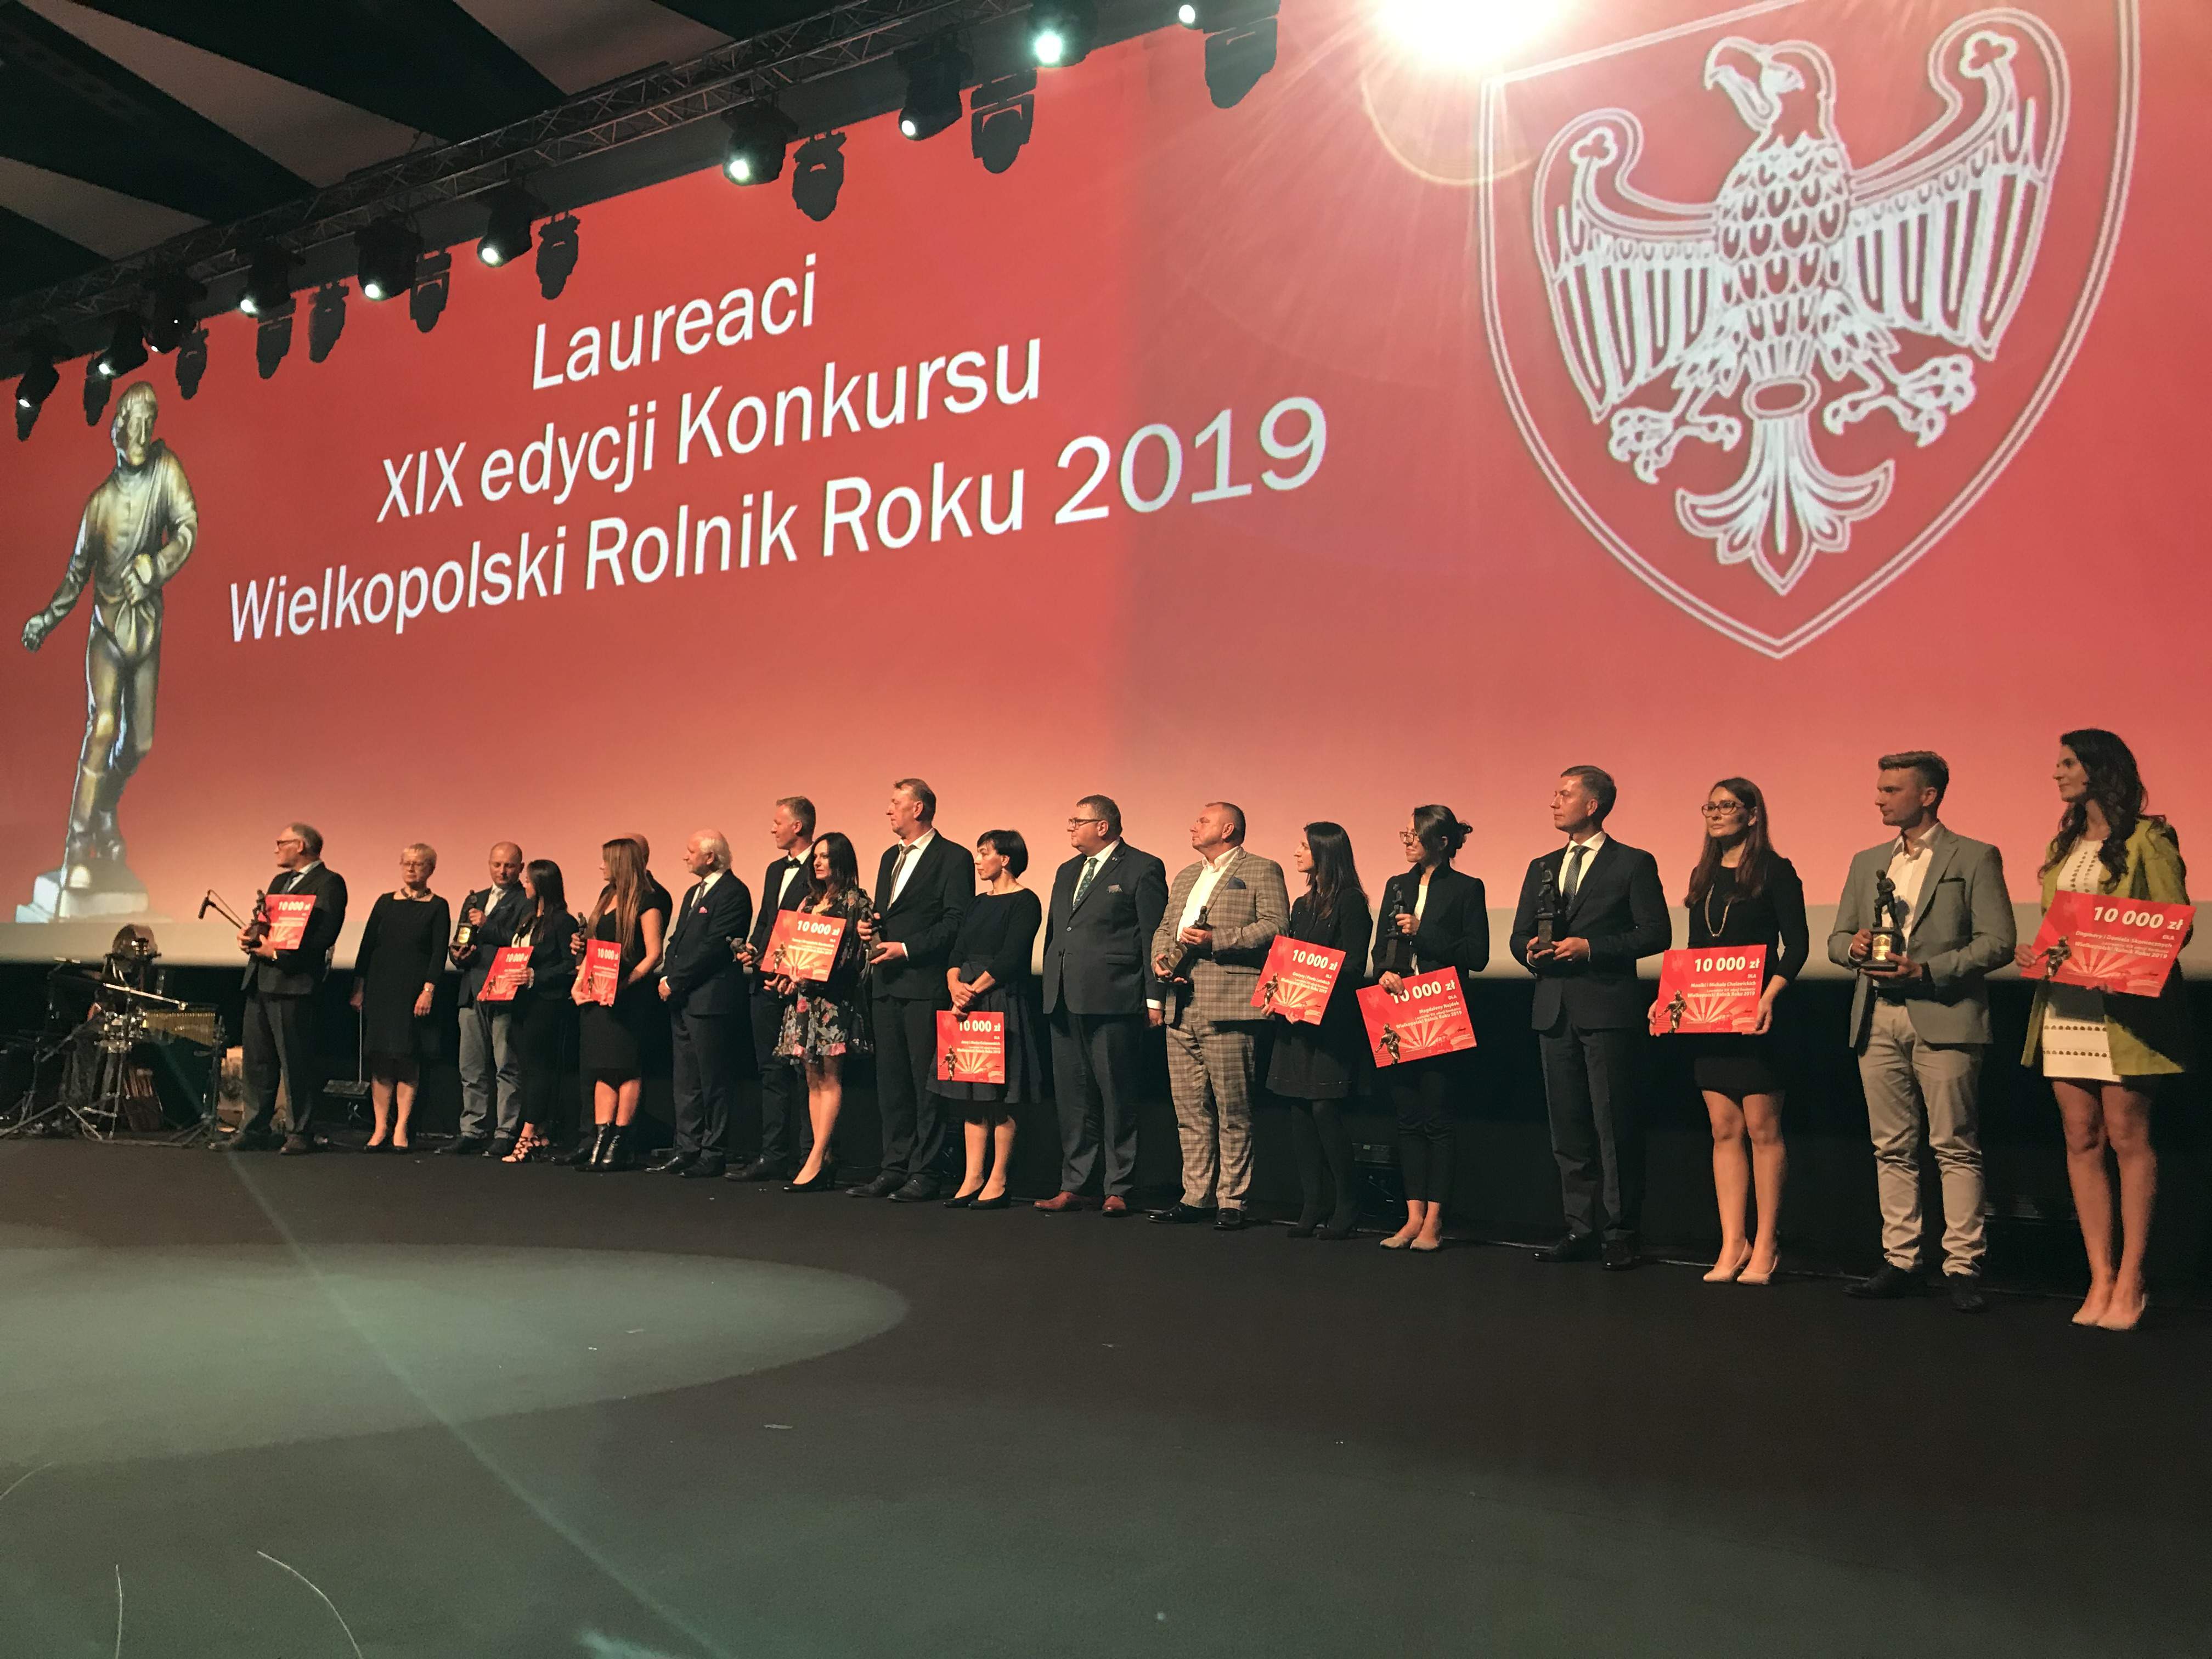 Laureaci XIX edycji Konkursu Wielkopolski Rolnik Roku 2019.